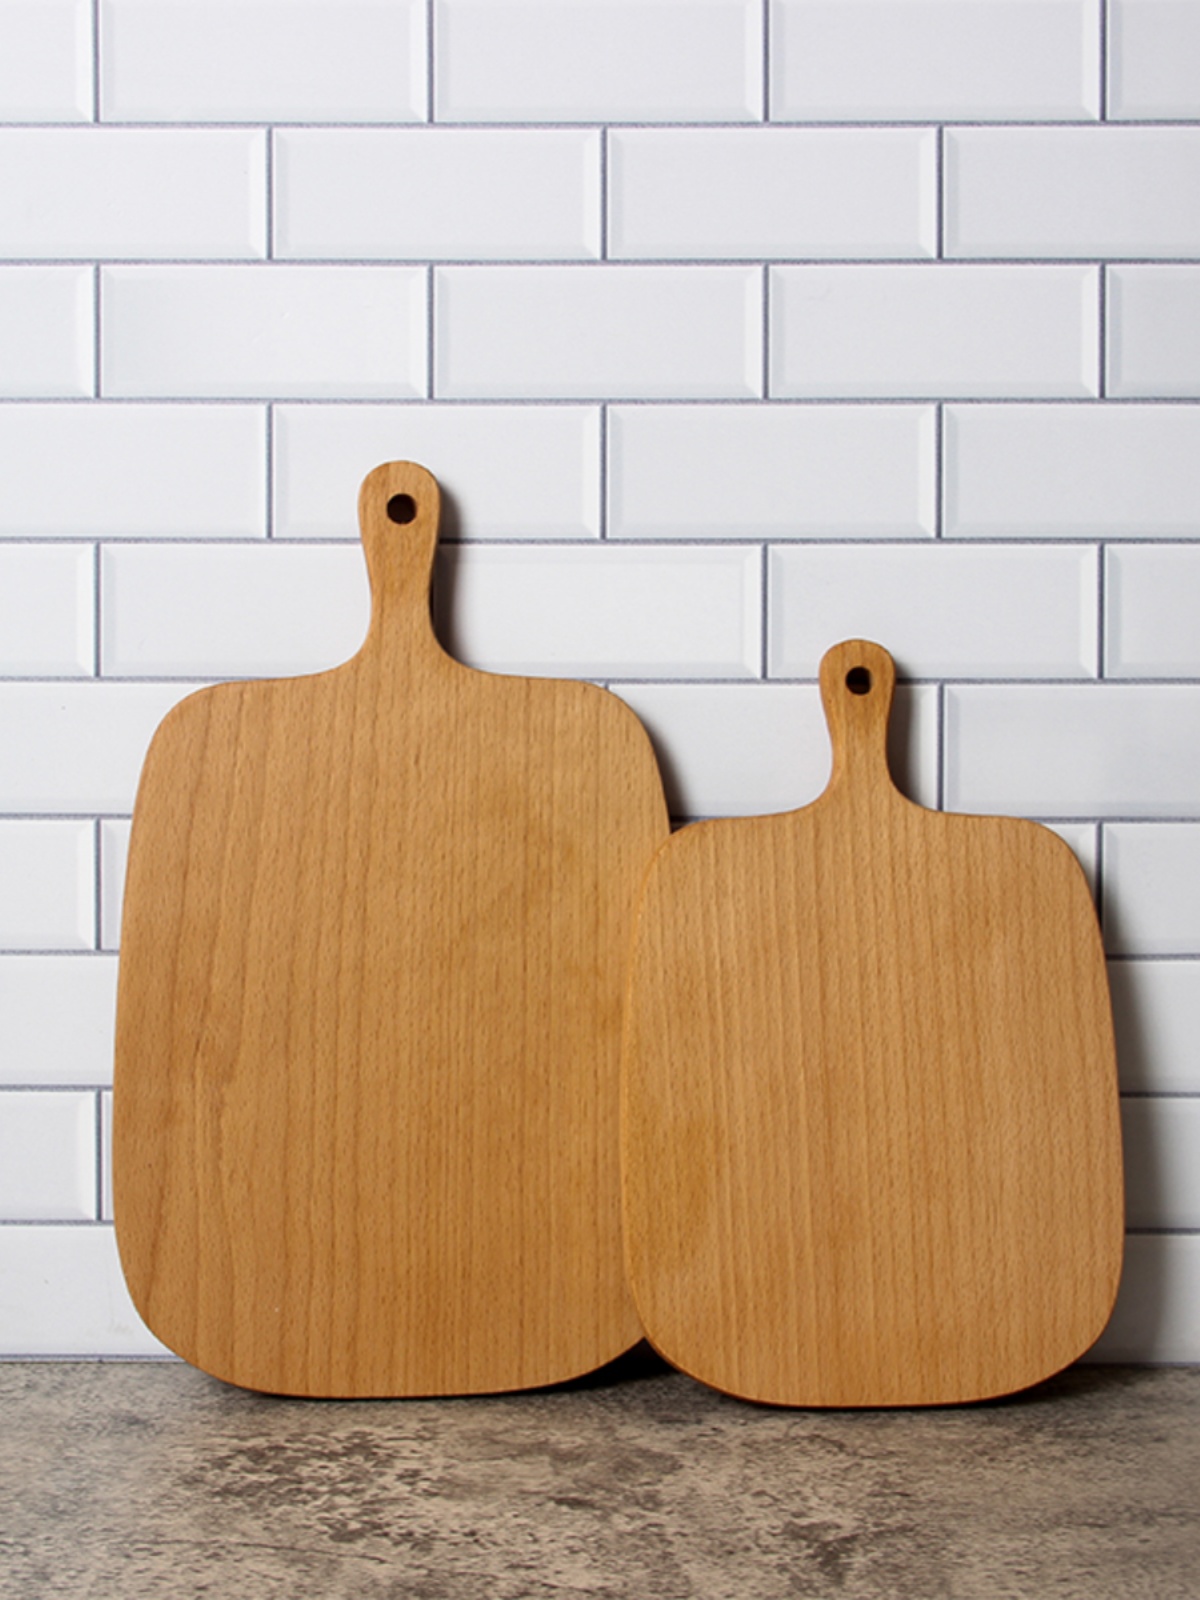 實木麵包託盤 日式簡約現代餐具廚房擺件 裝飾砧板樣板